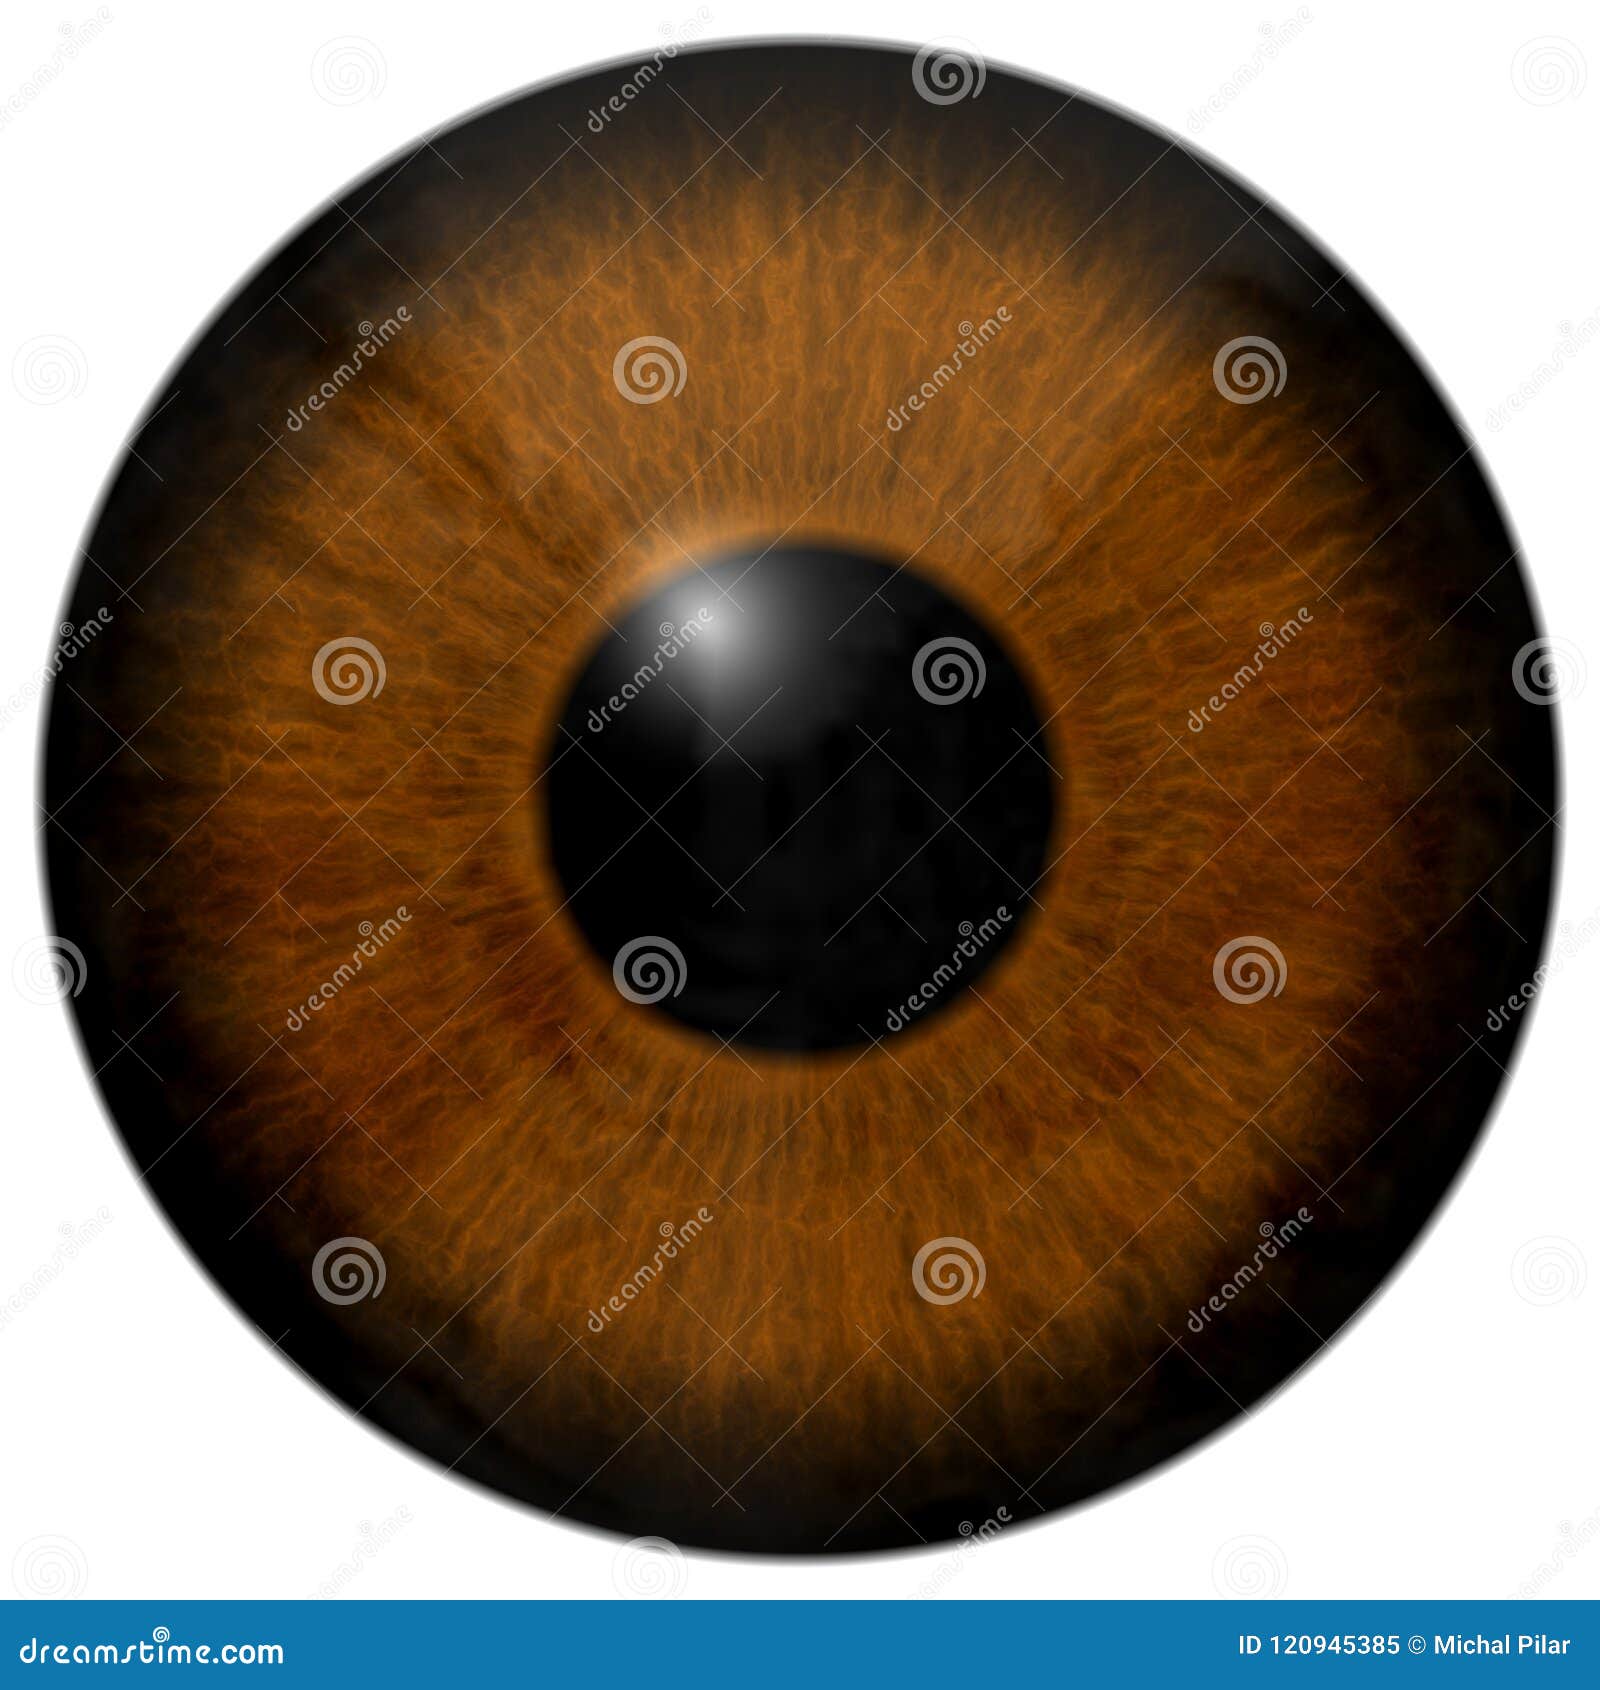 Frog Eye 20d Texture, Animal Eye Stock Image   Image of retina ...